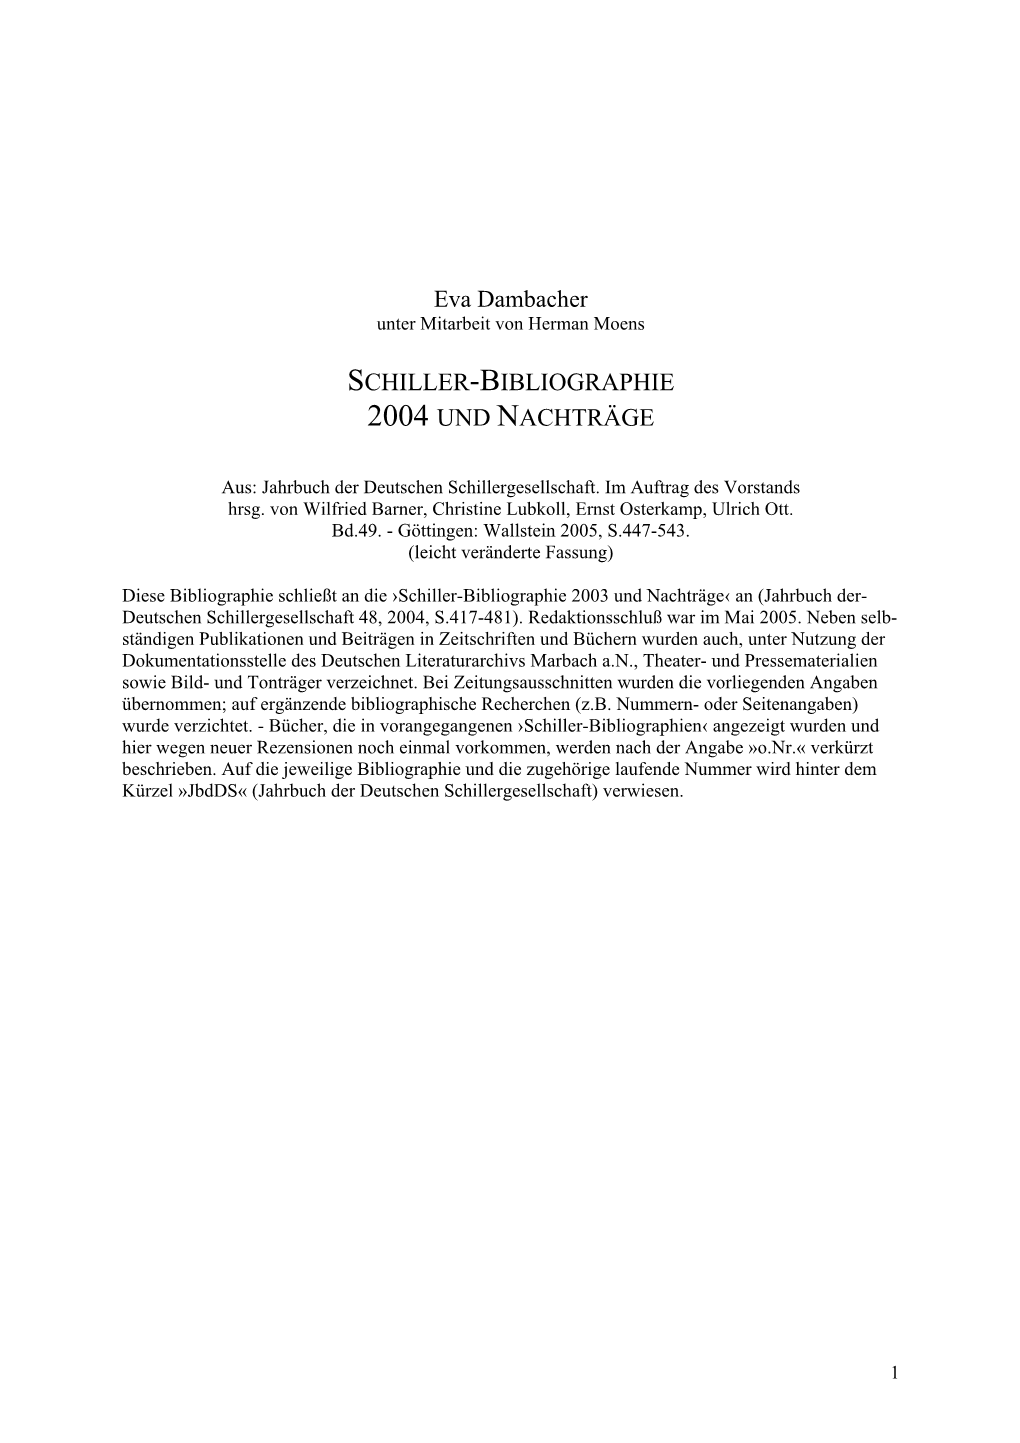 Schiller-Bibliographie 2004 Und Nachträge